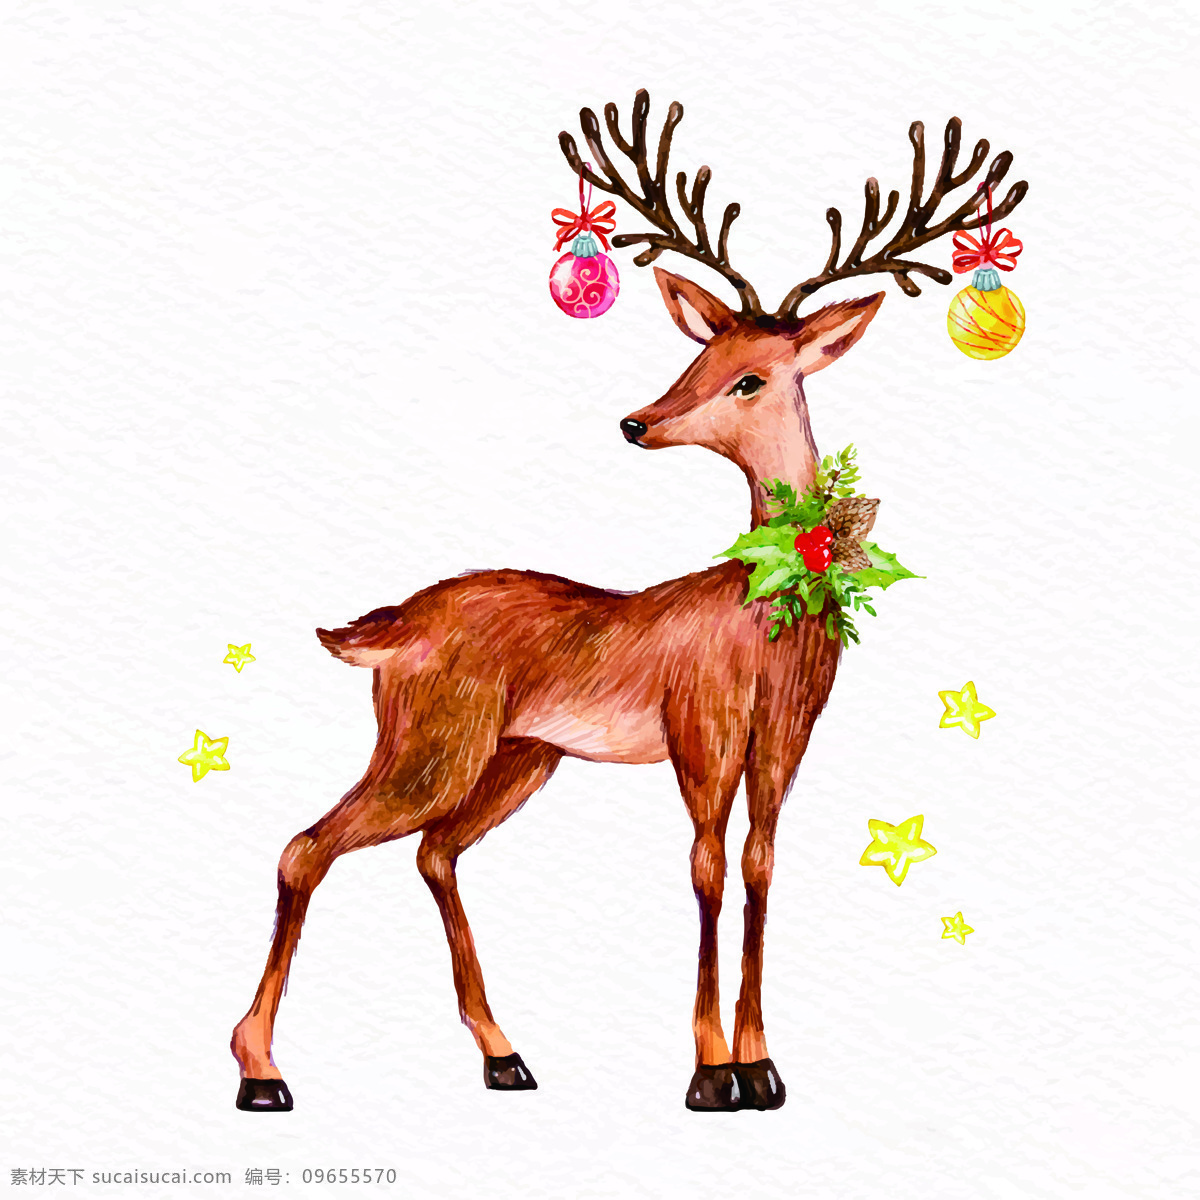 圣诞节 麋鹿 漫画 海报 节日 动物 元素 卡通漫画